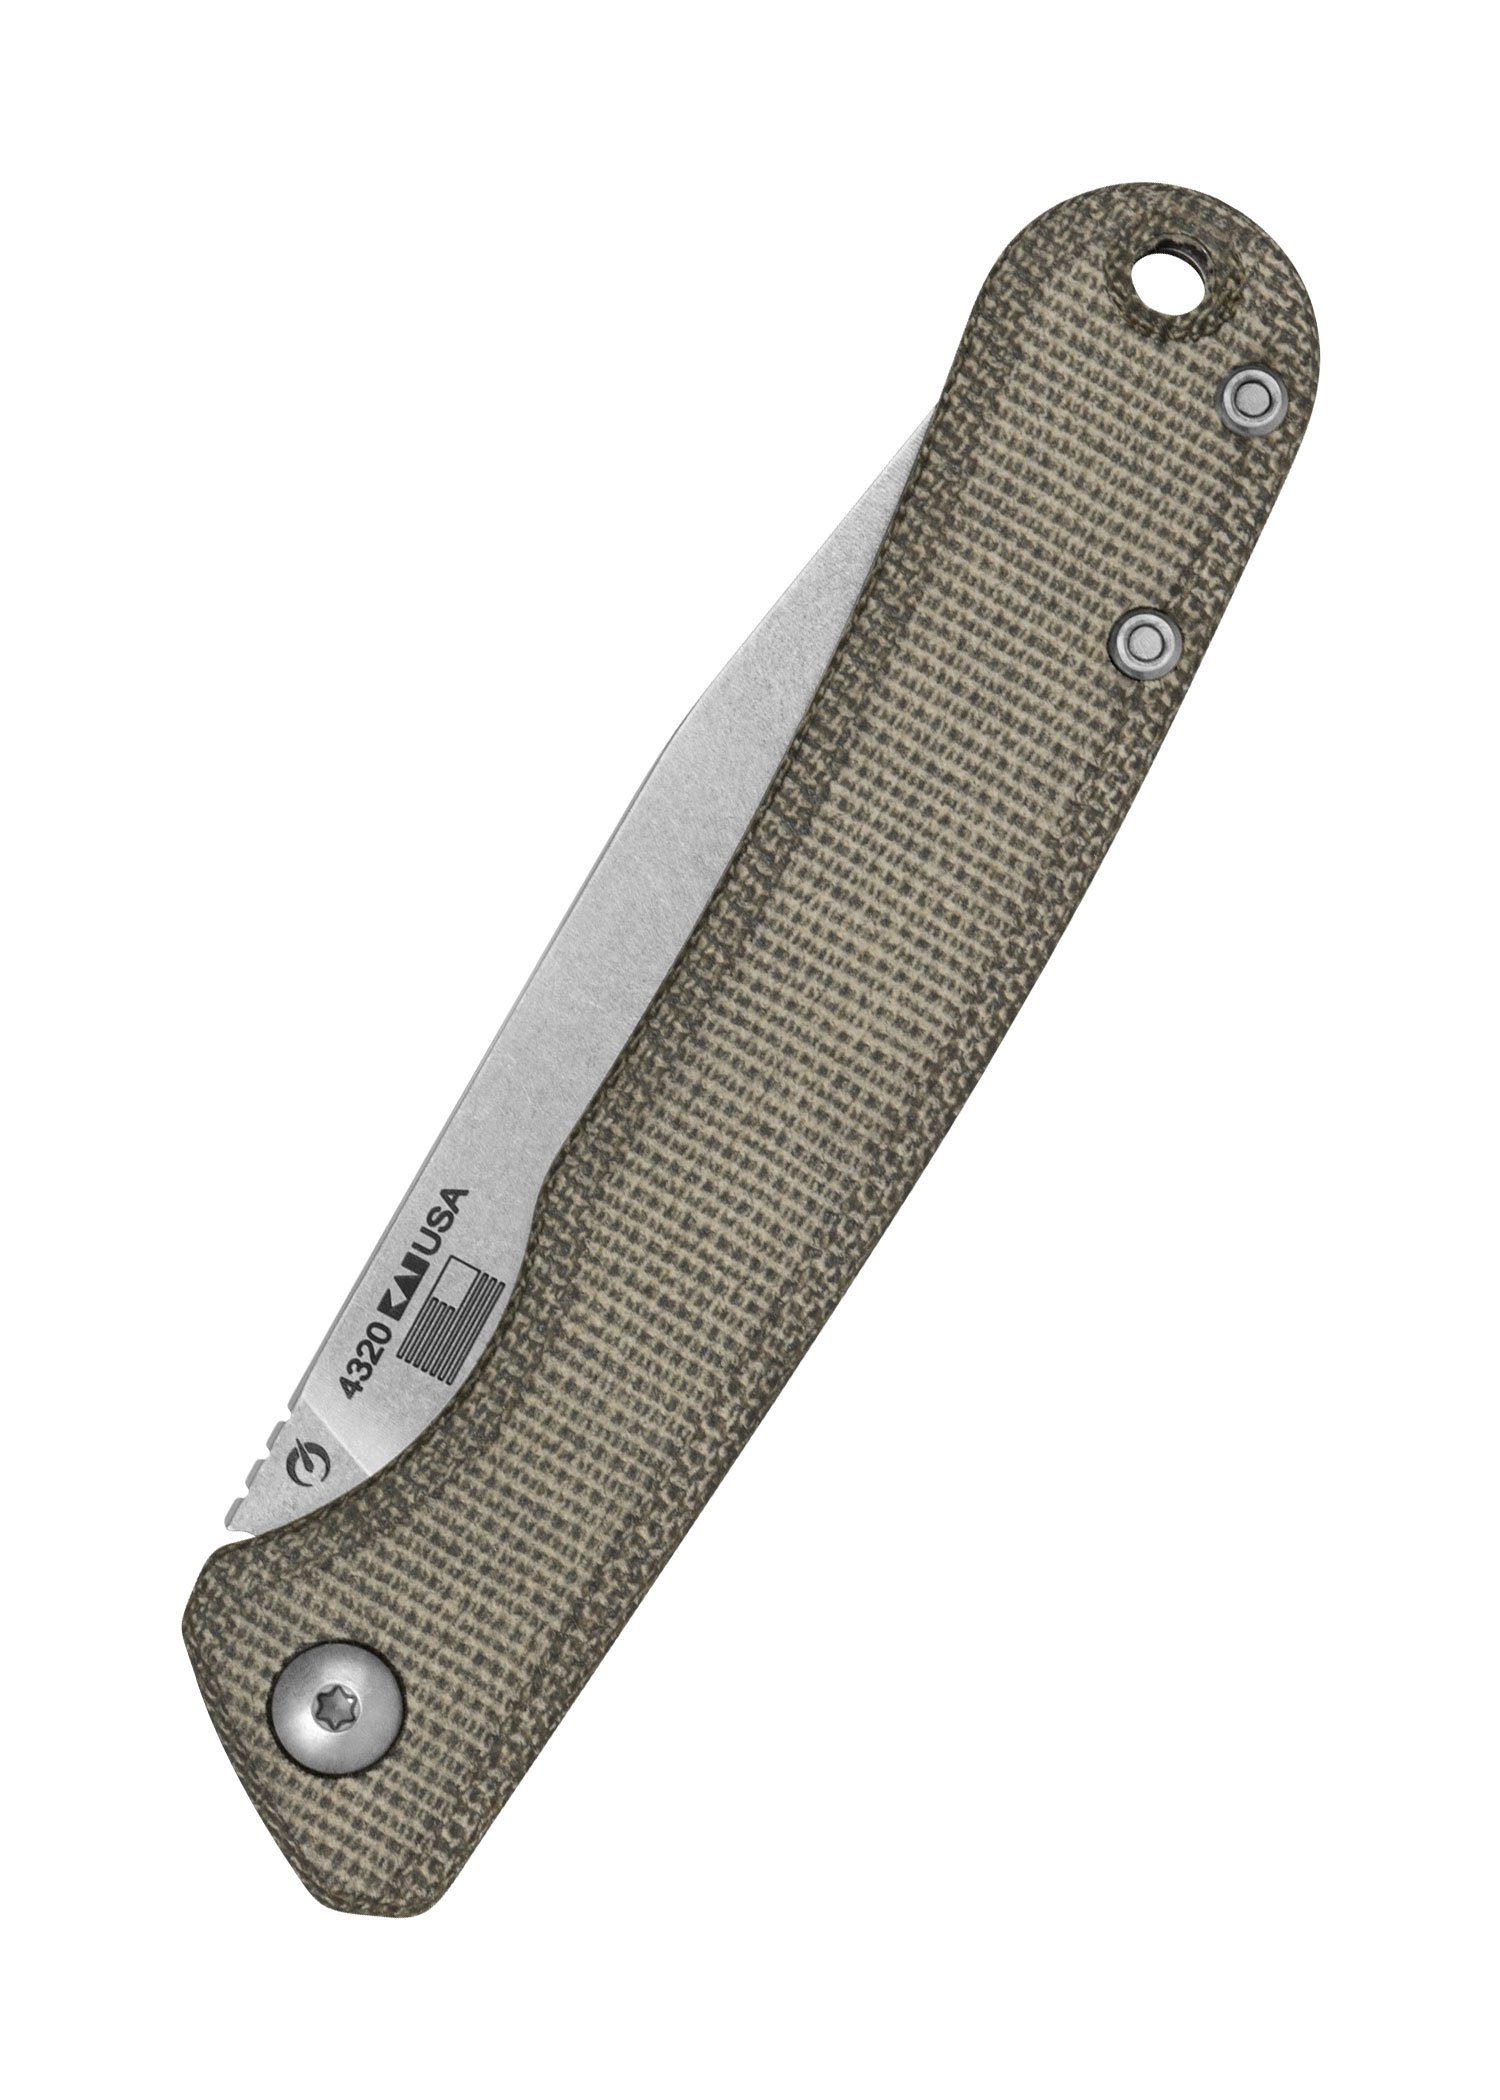 Kershaw Knives Taschenmesser Kershaw Federalist Pulverstahl CPM154 mit Slipjoint - Tachenmesser